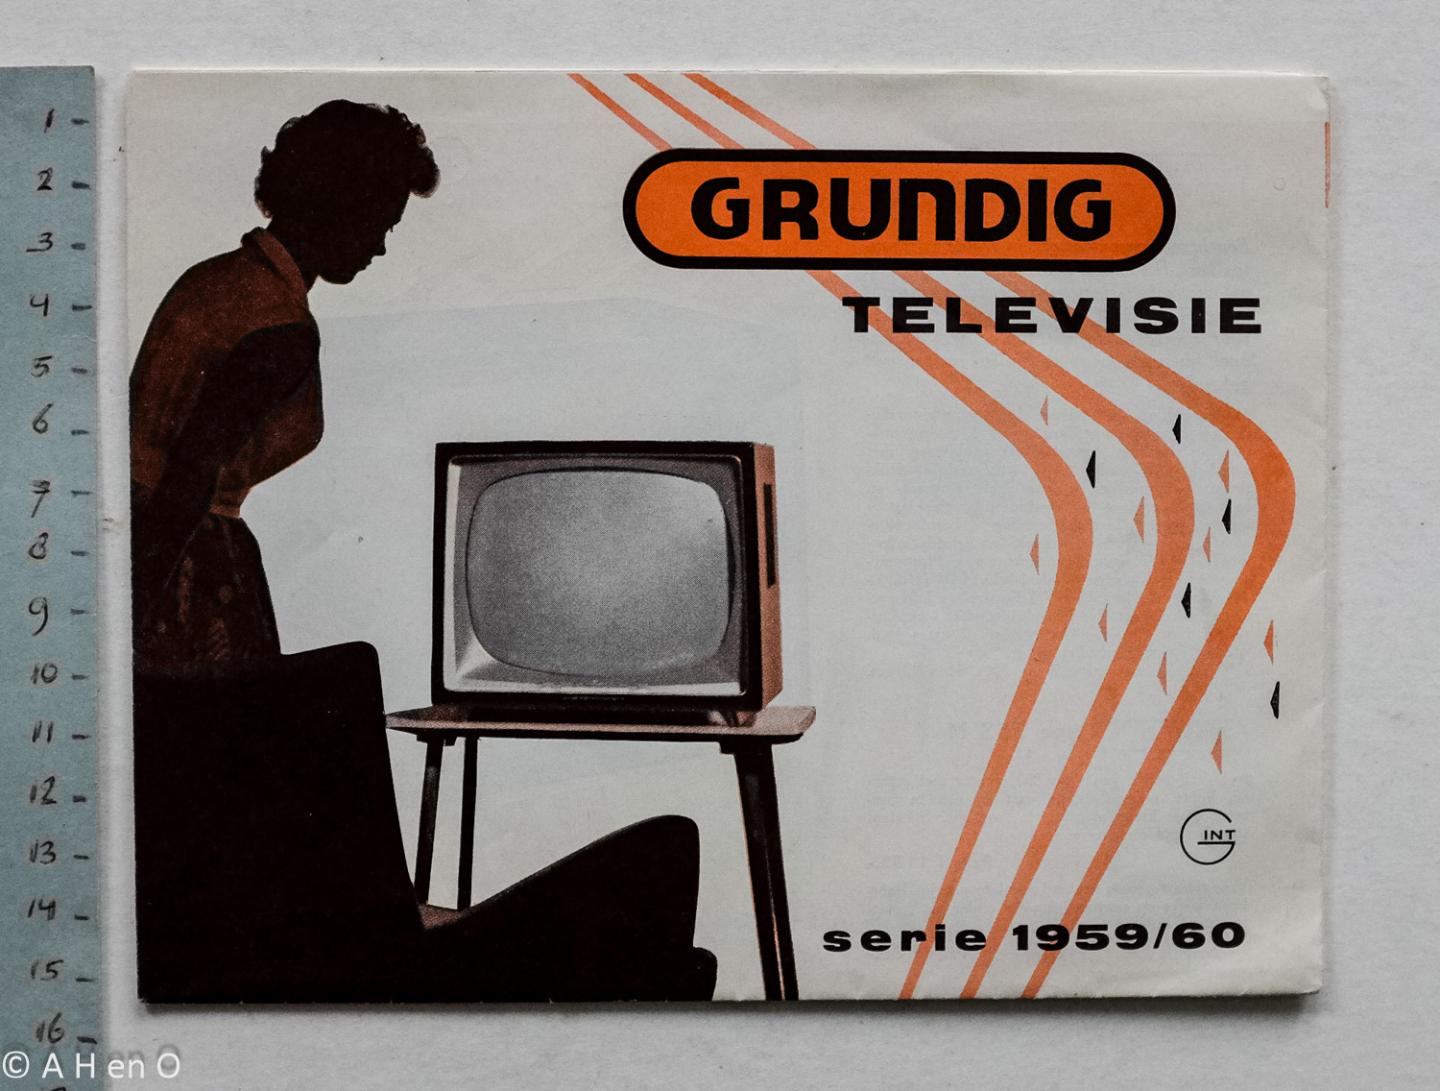  - Grundig Televisie - serie 1959/60